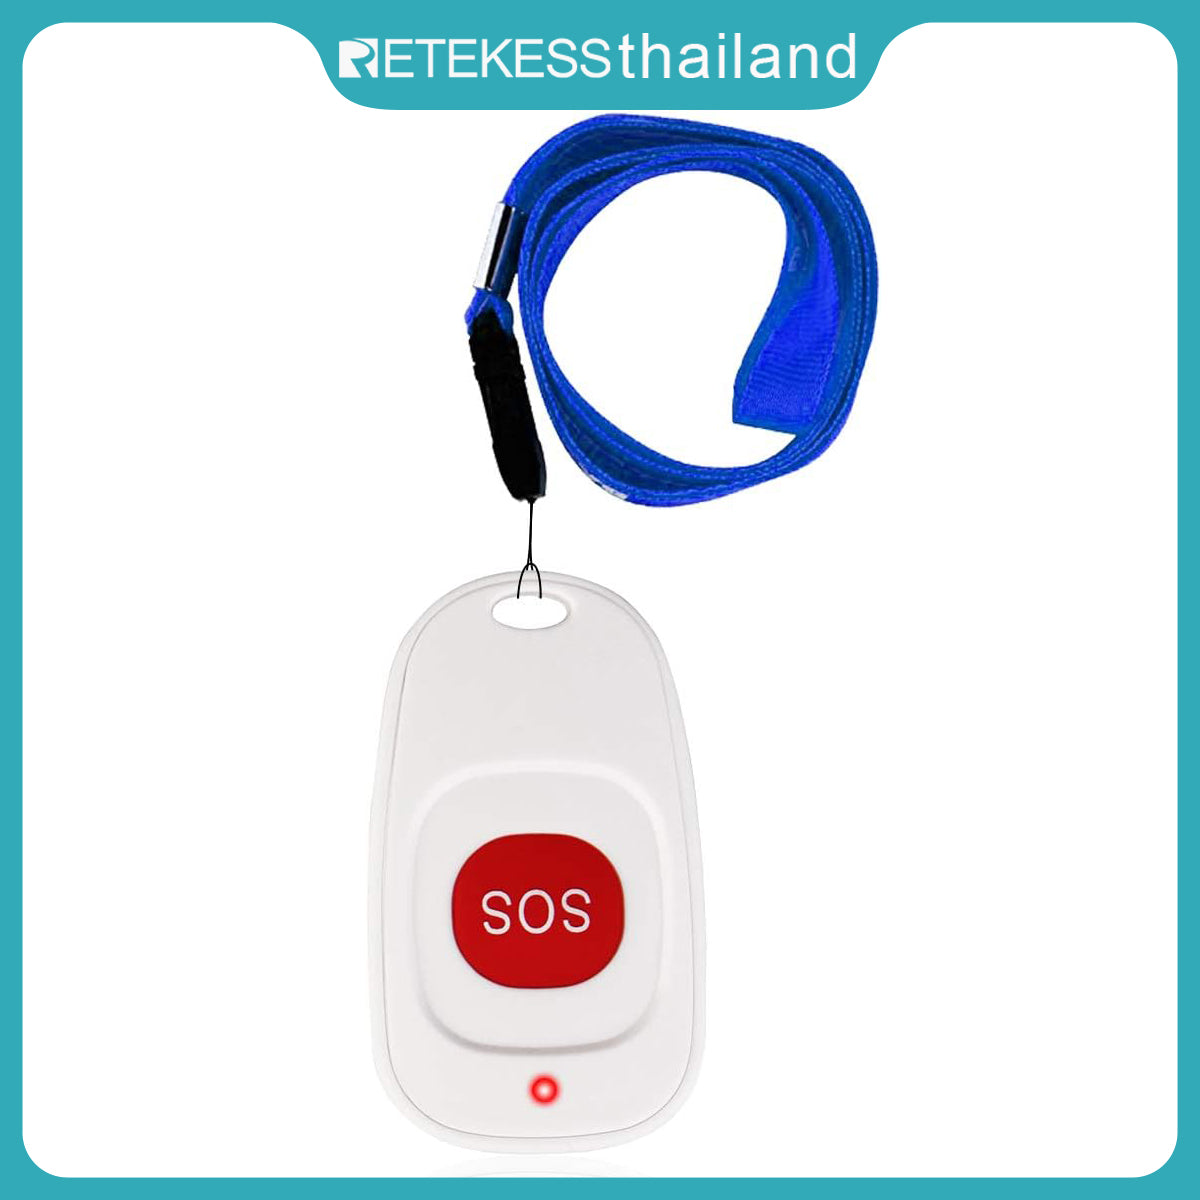 Retekess TH001 ปุ่มโทรไร้สายสำหรับเพจเจอร์ SOS ผู้สูงอายุ